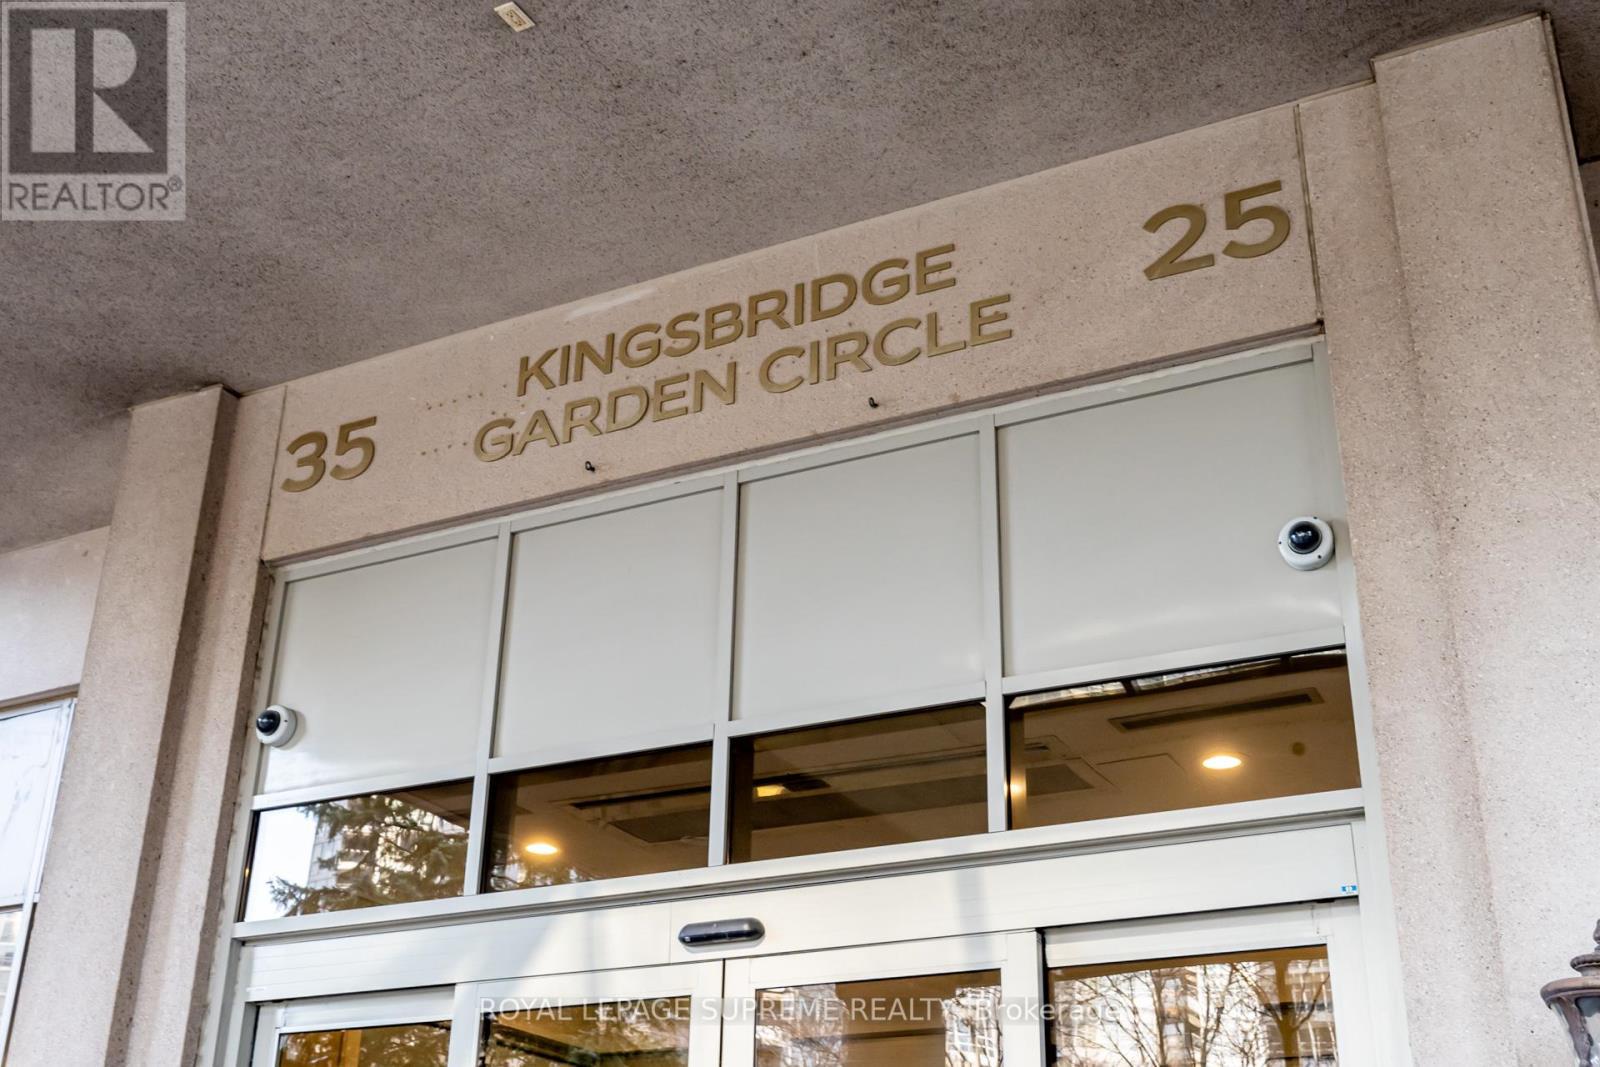 












#2022 -25 KINGSBRIDGE GARDEN CIRC

,
Mississauga,




Ontario
L5R4B1

